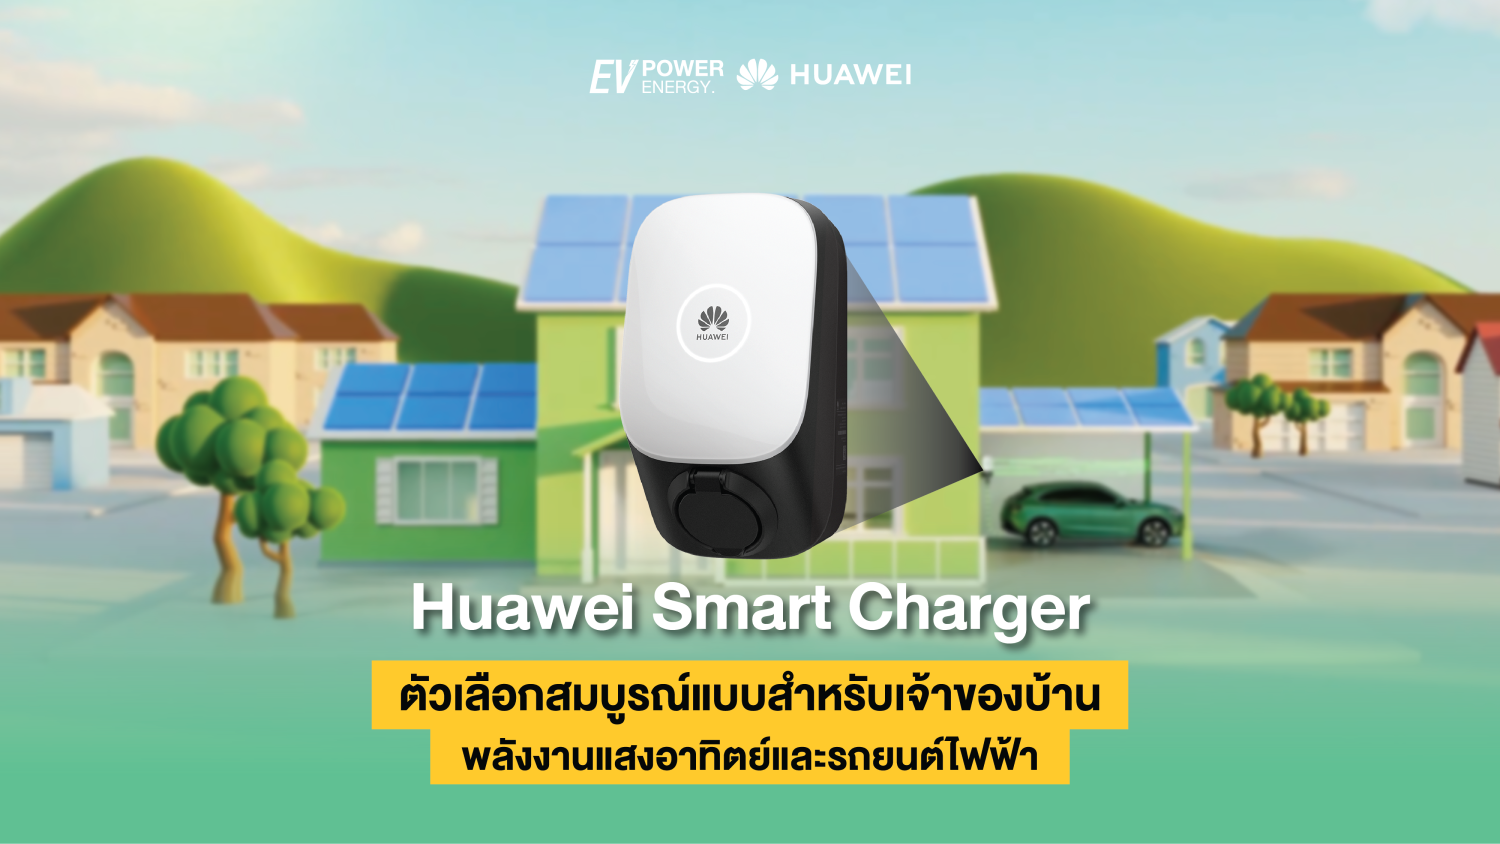 Huawei Smart Charger ตัวเลือกสมบูรณ์แบบสำหรับเจ้าของบ้านพลังงานแสงอาทิตย์และรถยนต์ไฟฟ้า 1